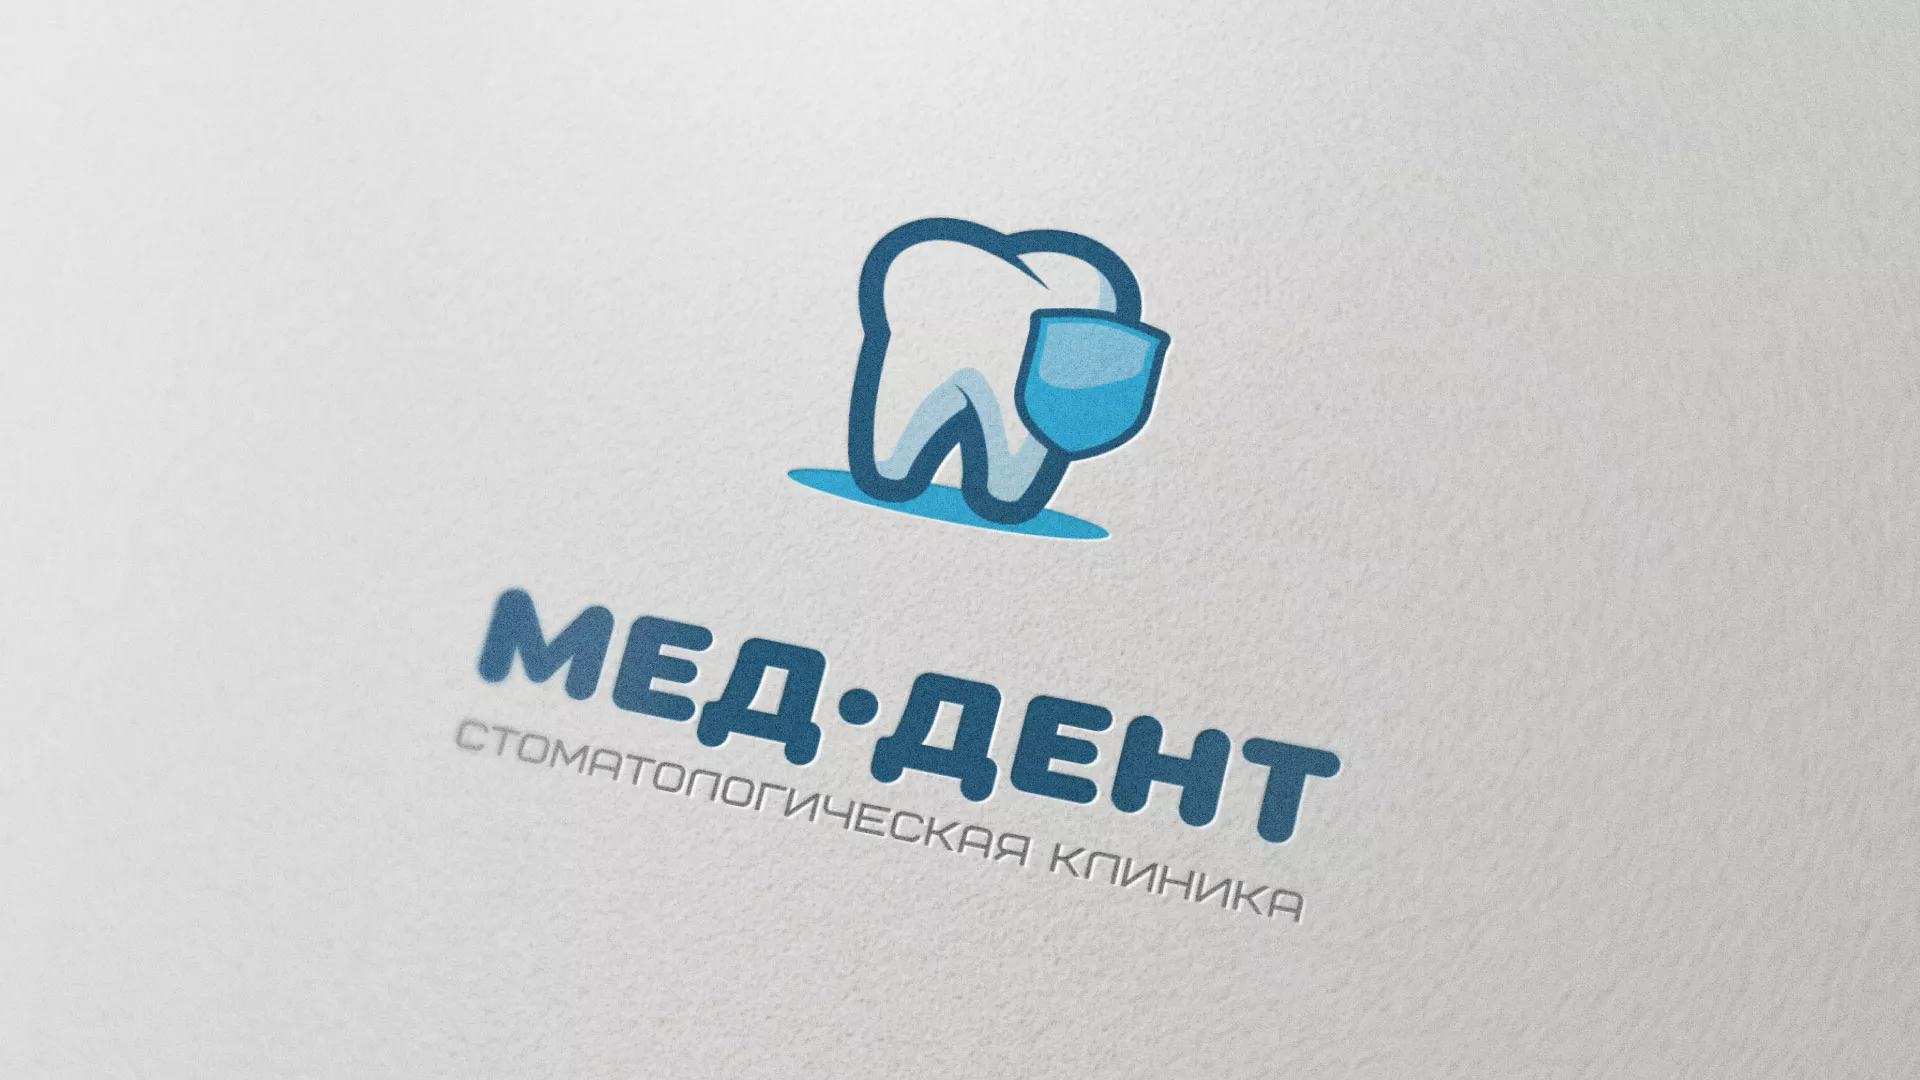 Разработка логотипа стоматологической клиники «МЕД-ДЕНТ» в Болхове